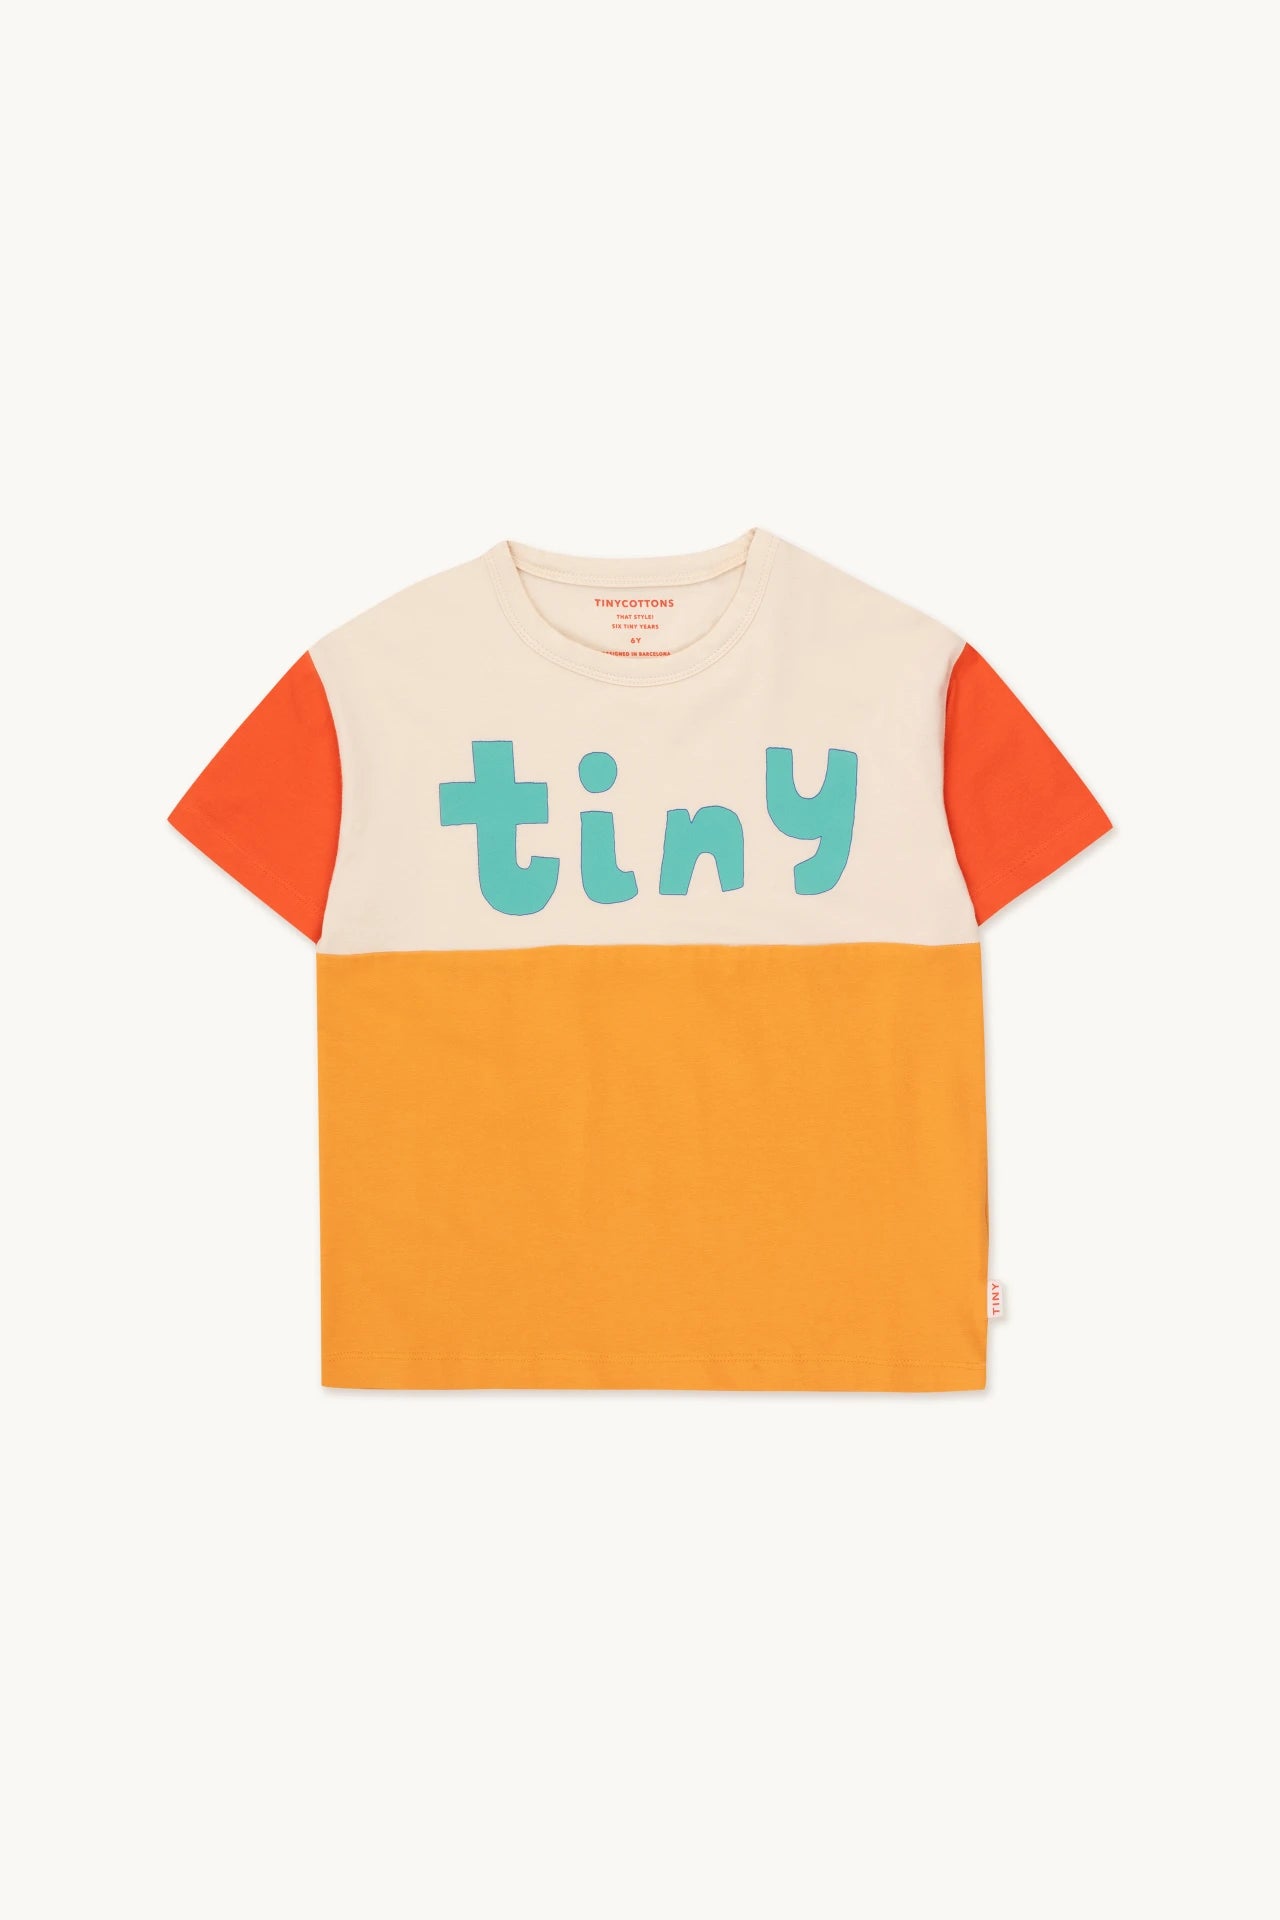 Tiny Cottons - Tiny Color Block T-Shirt